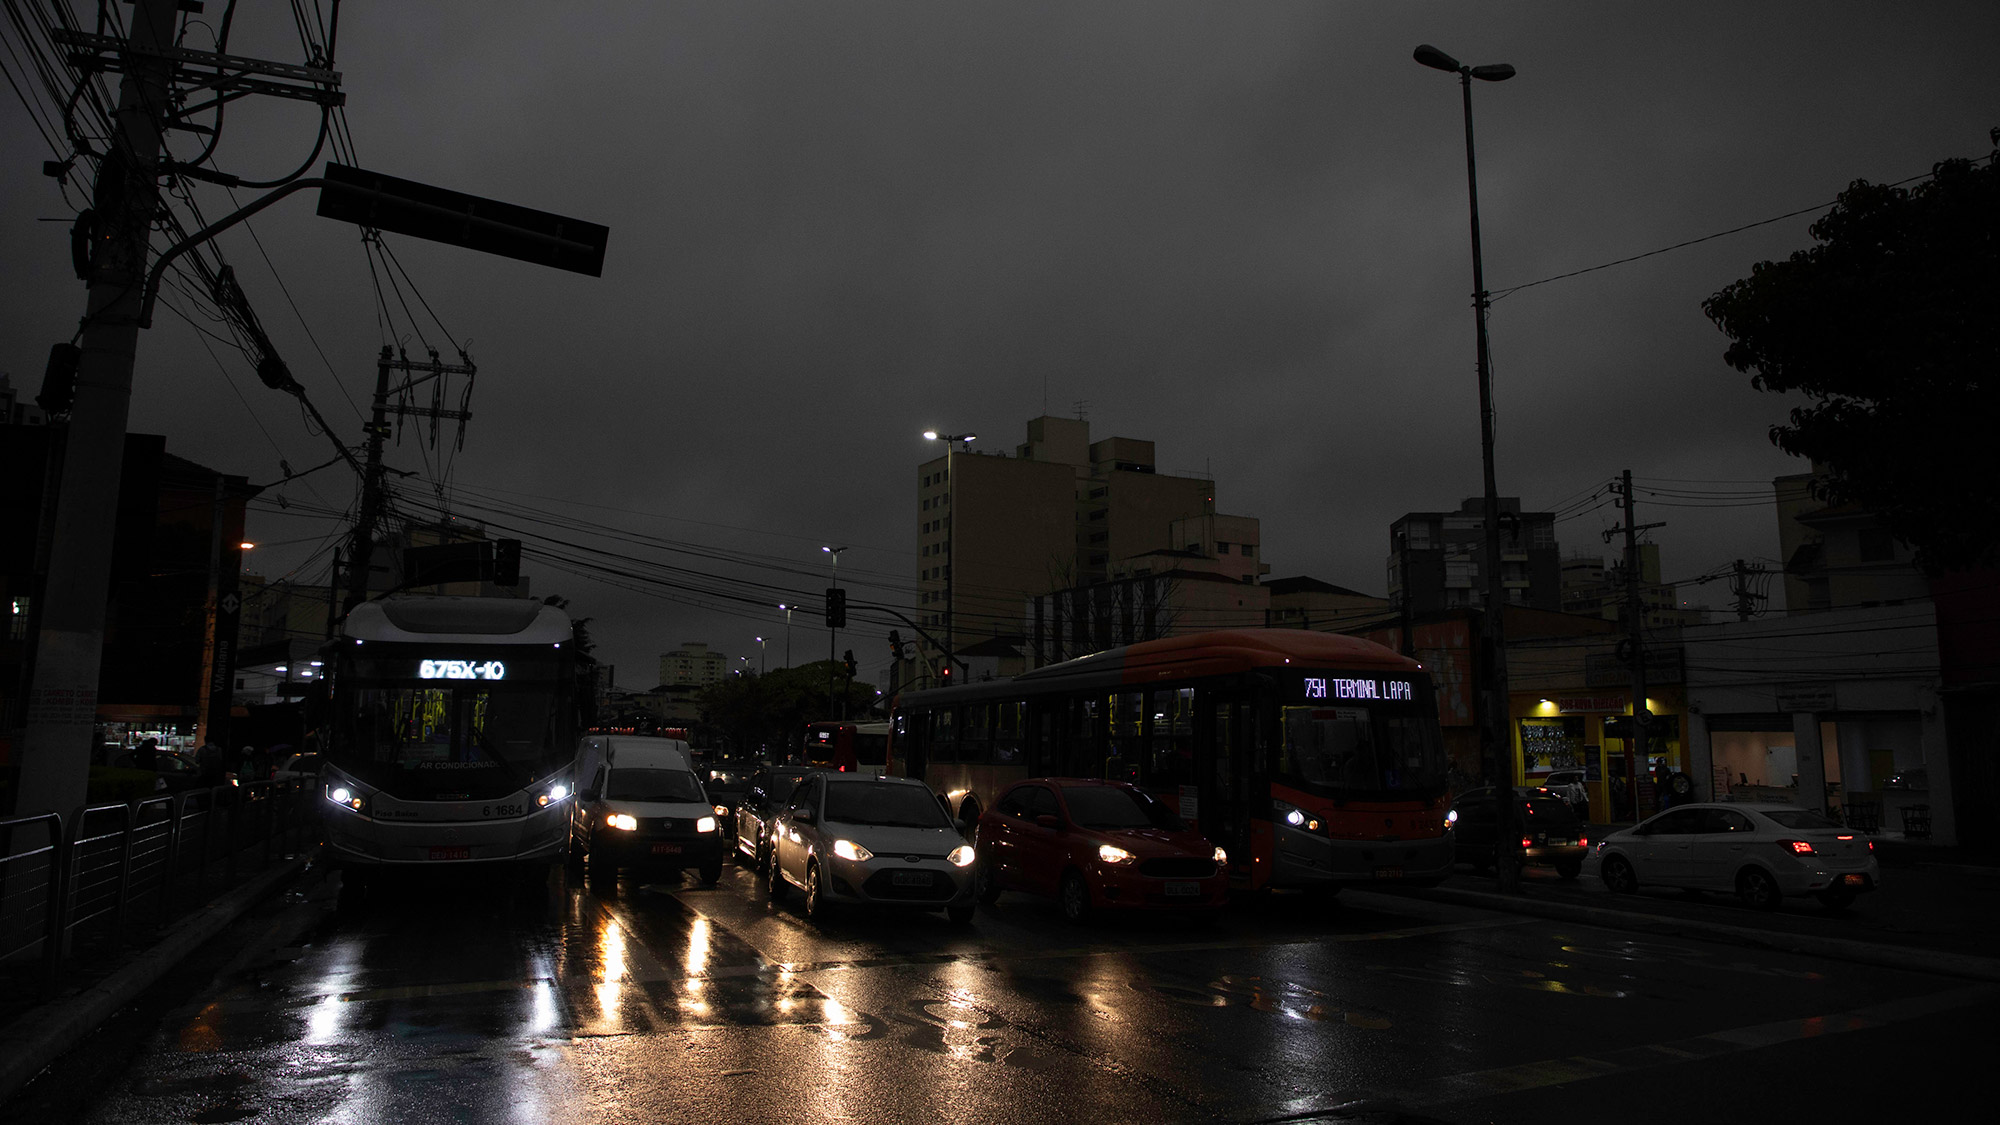 Над тюрьмою полночь вся чернее. Сан Паулу ночная жизнь. Сан-Паулу город ночью. Города превращаются в ночь. Страшный город Сан-Паулу.